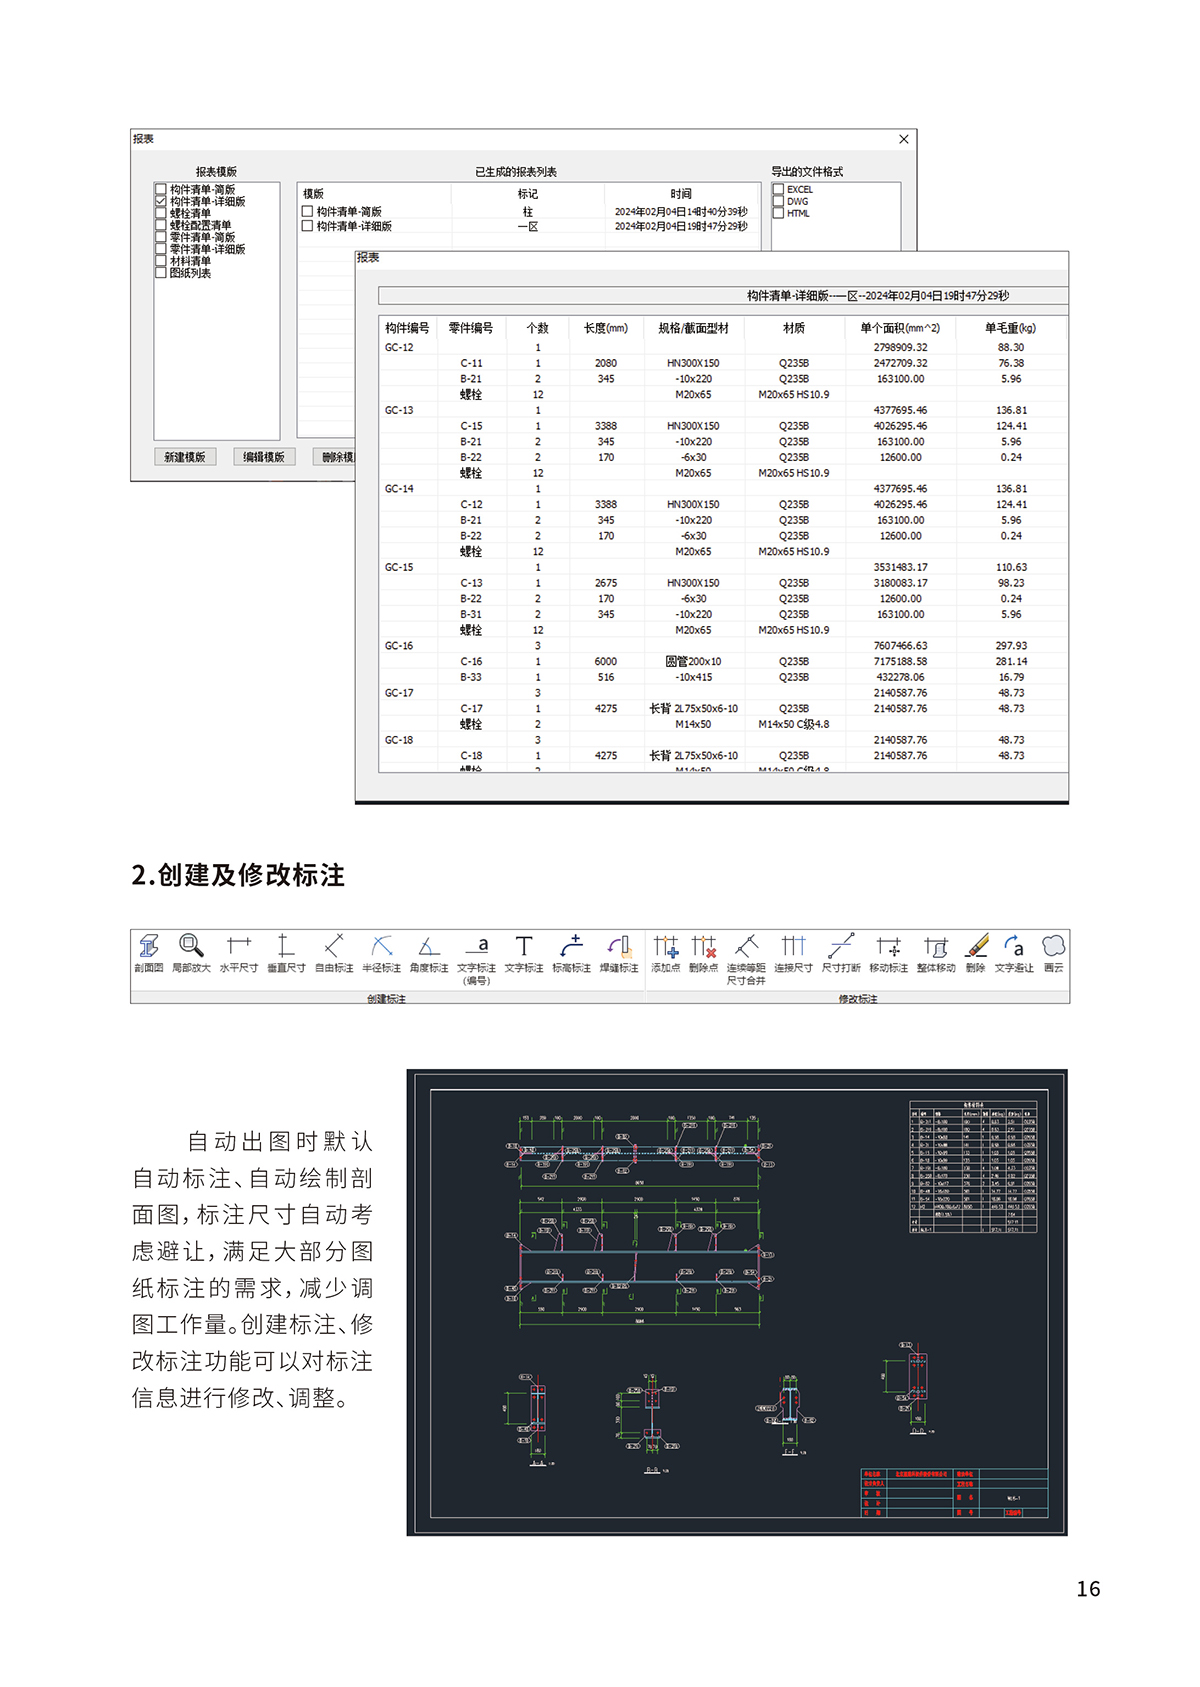 钢结构深化设计软件Y-ST-9_02.jpg